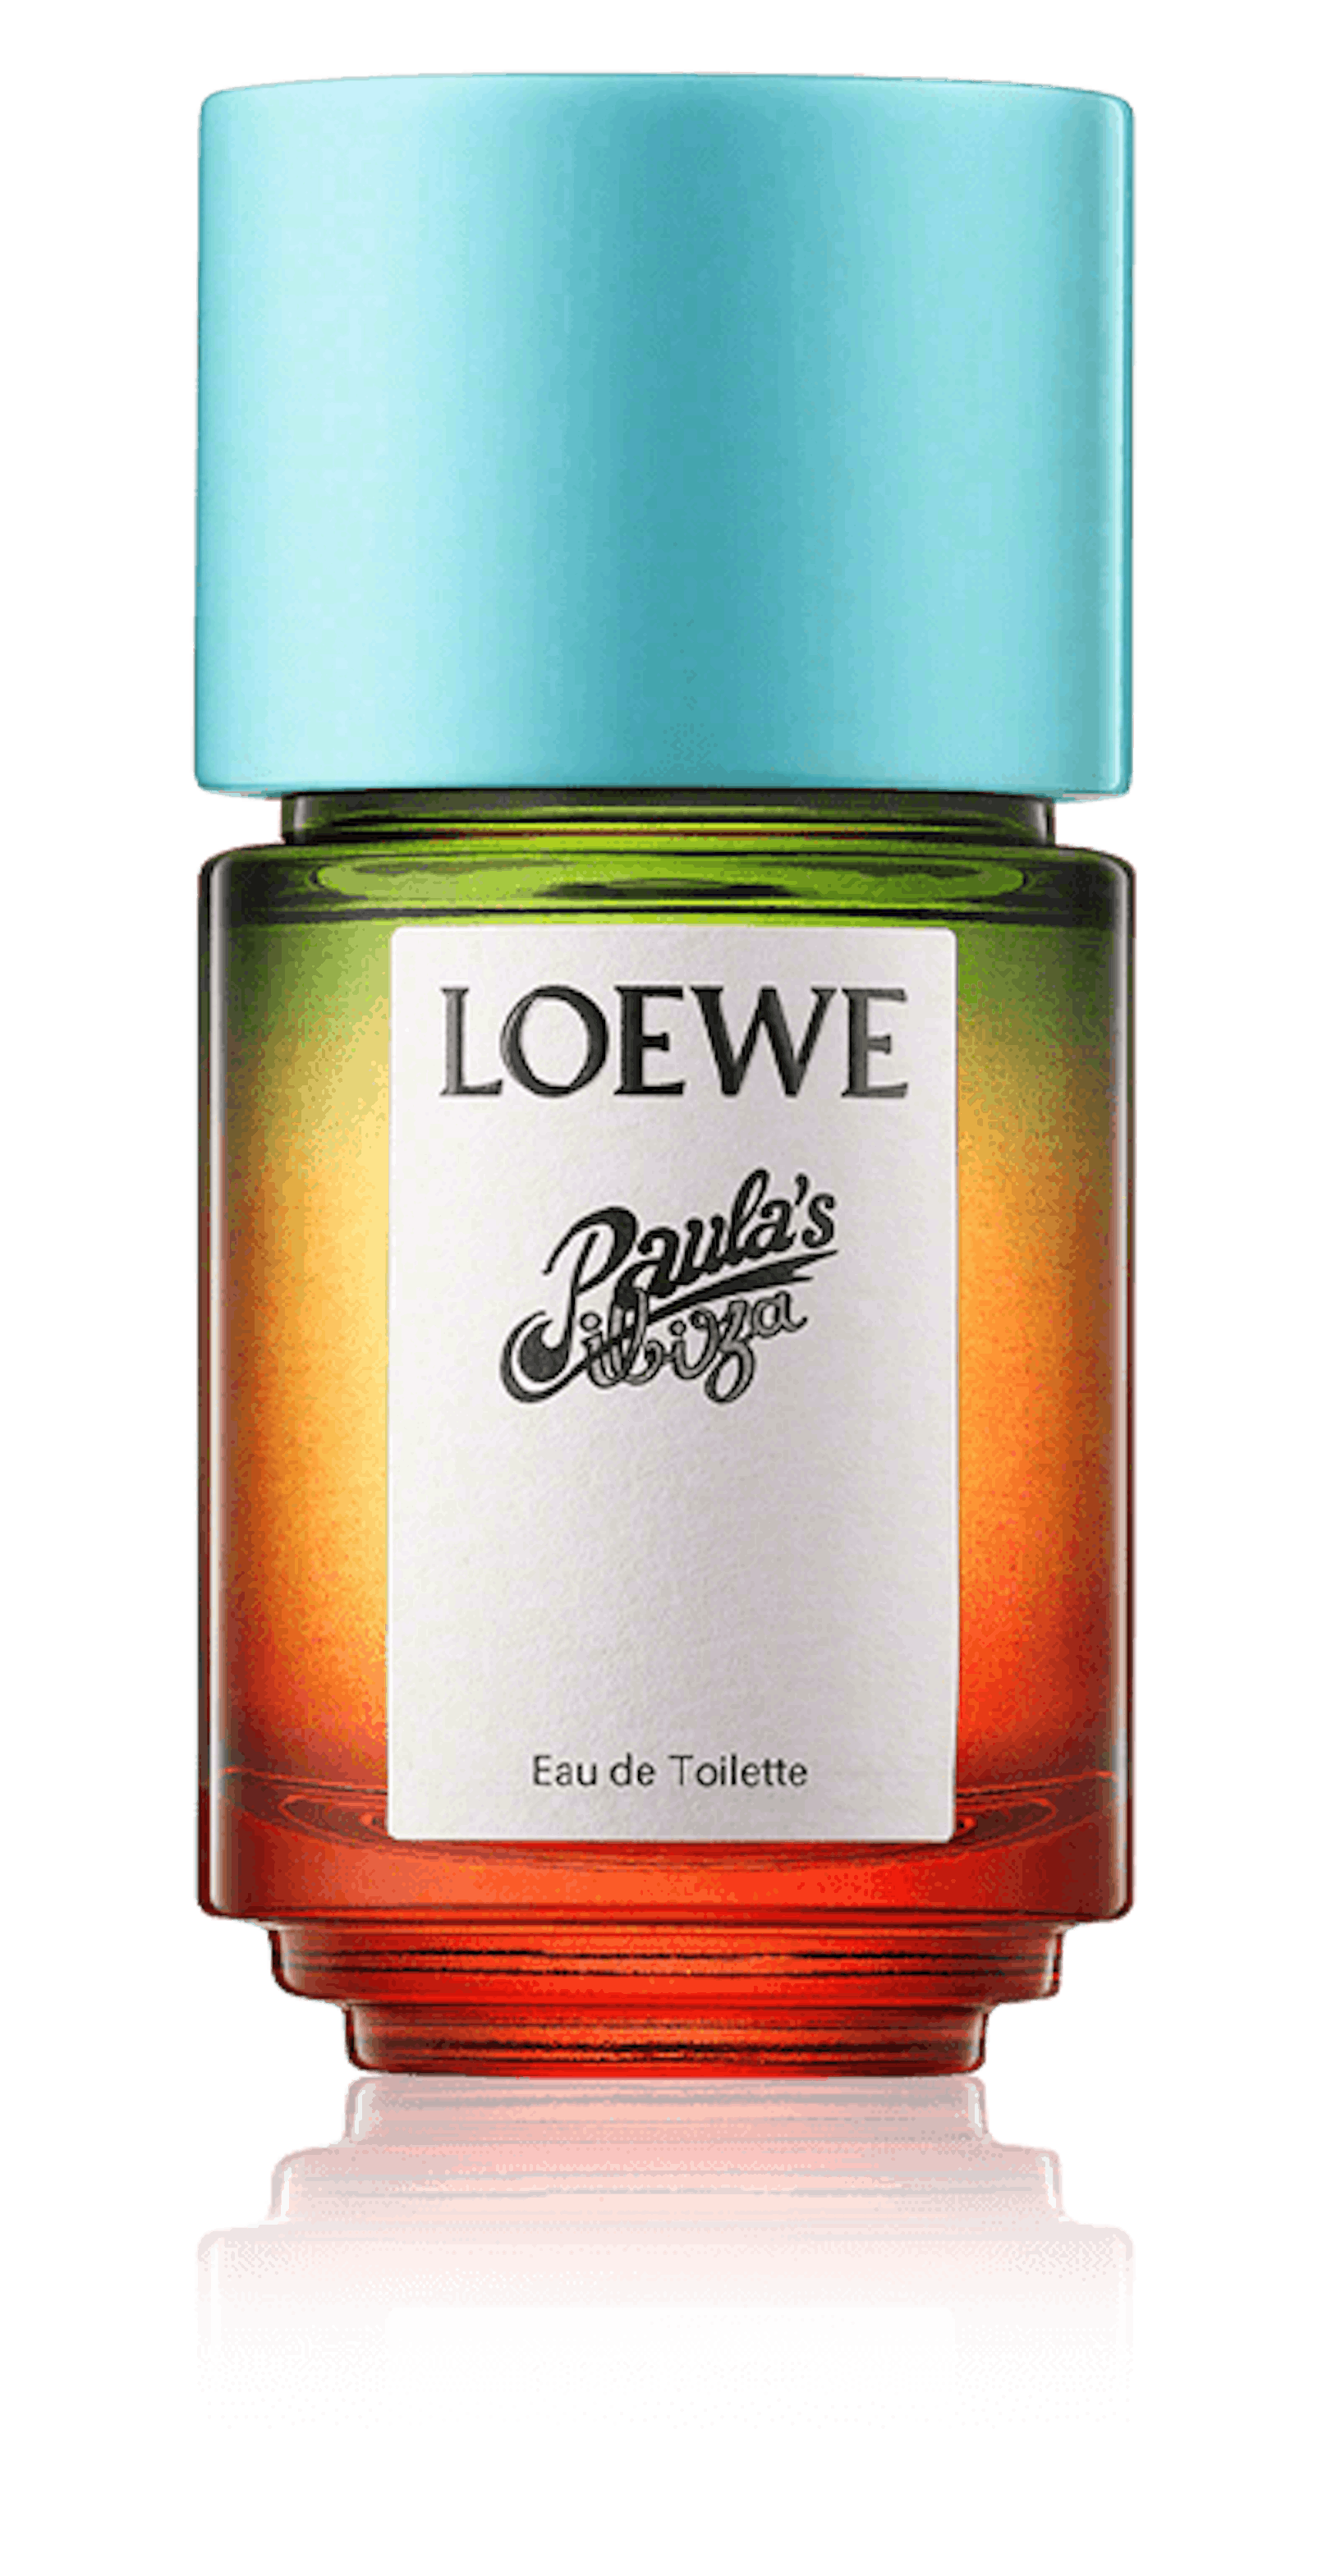 Der bunte Farb-Mix von LOEWE gehört zur Familie der blumig-vanillig riechenden Parfums. Genau das richtige für heiße Tage.